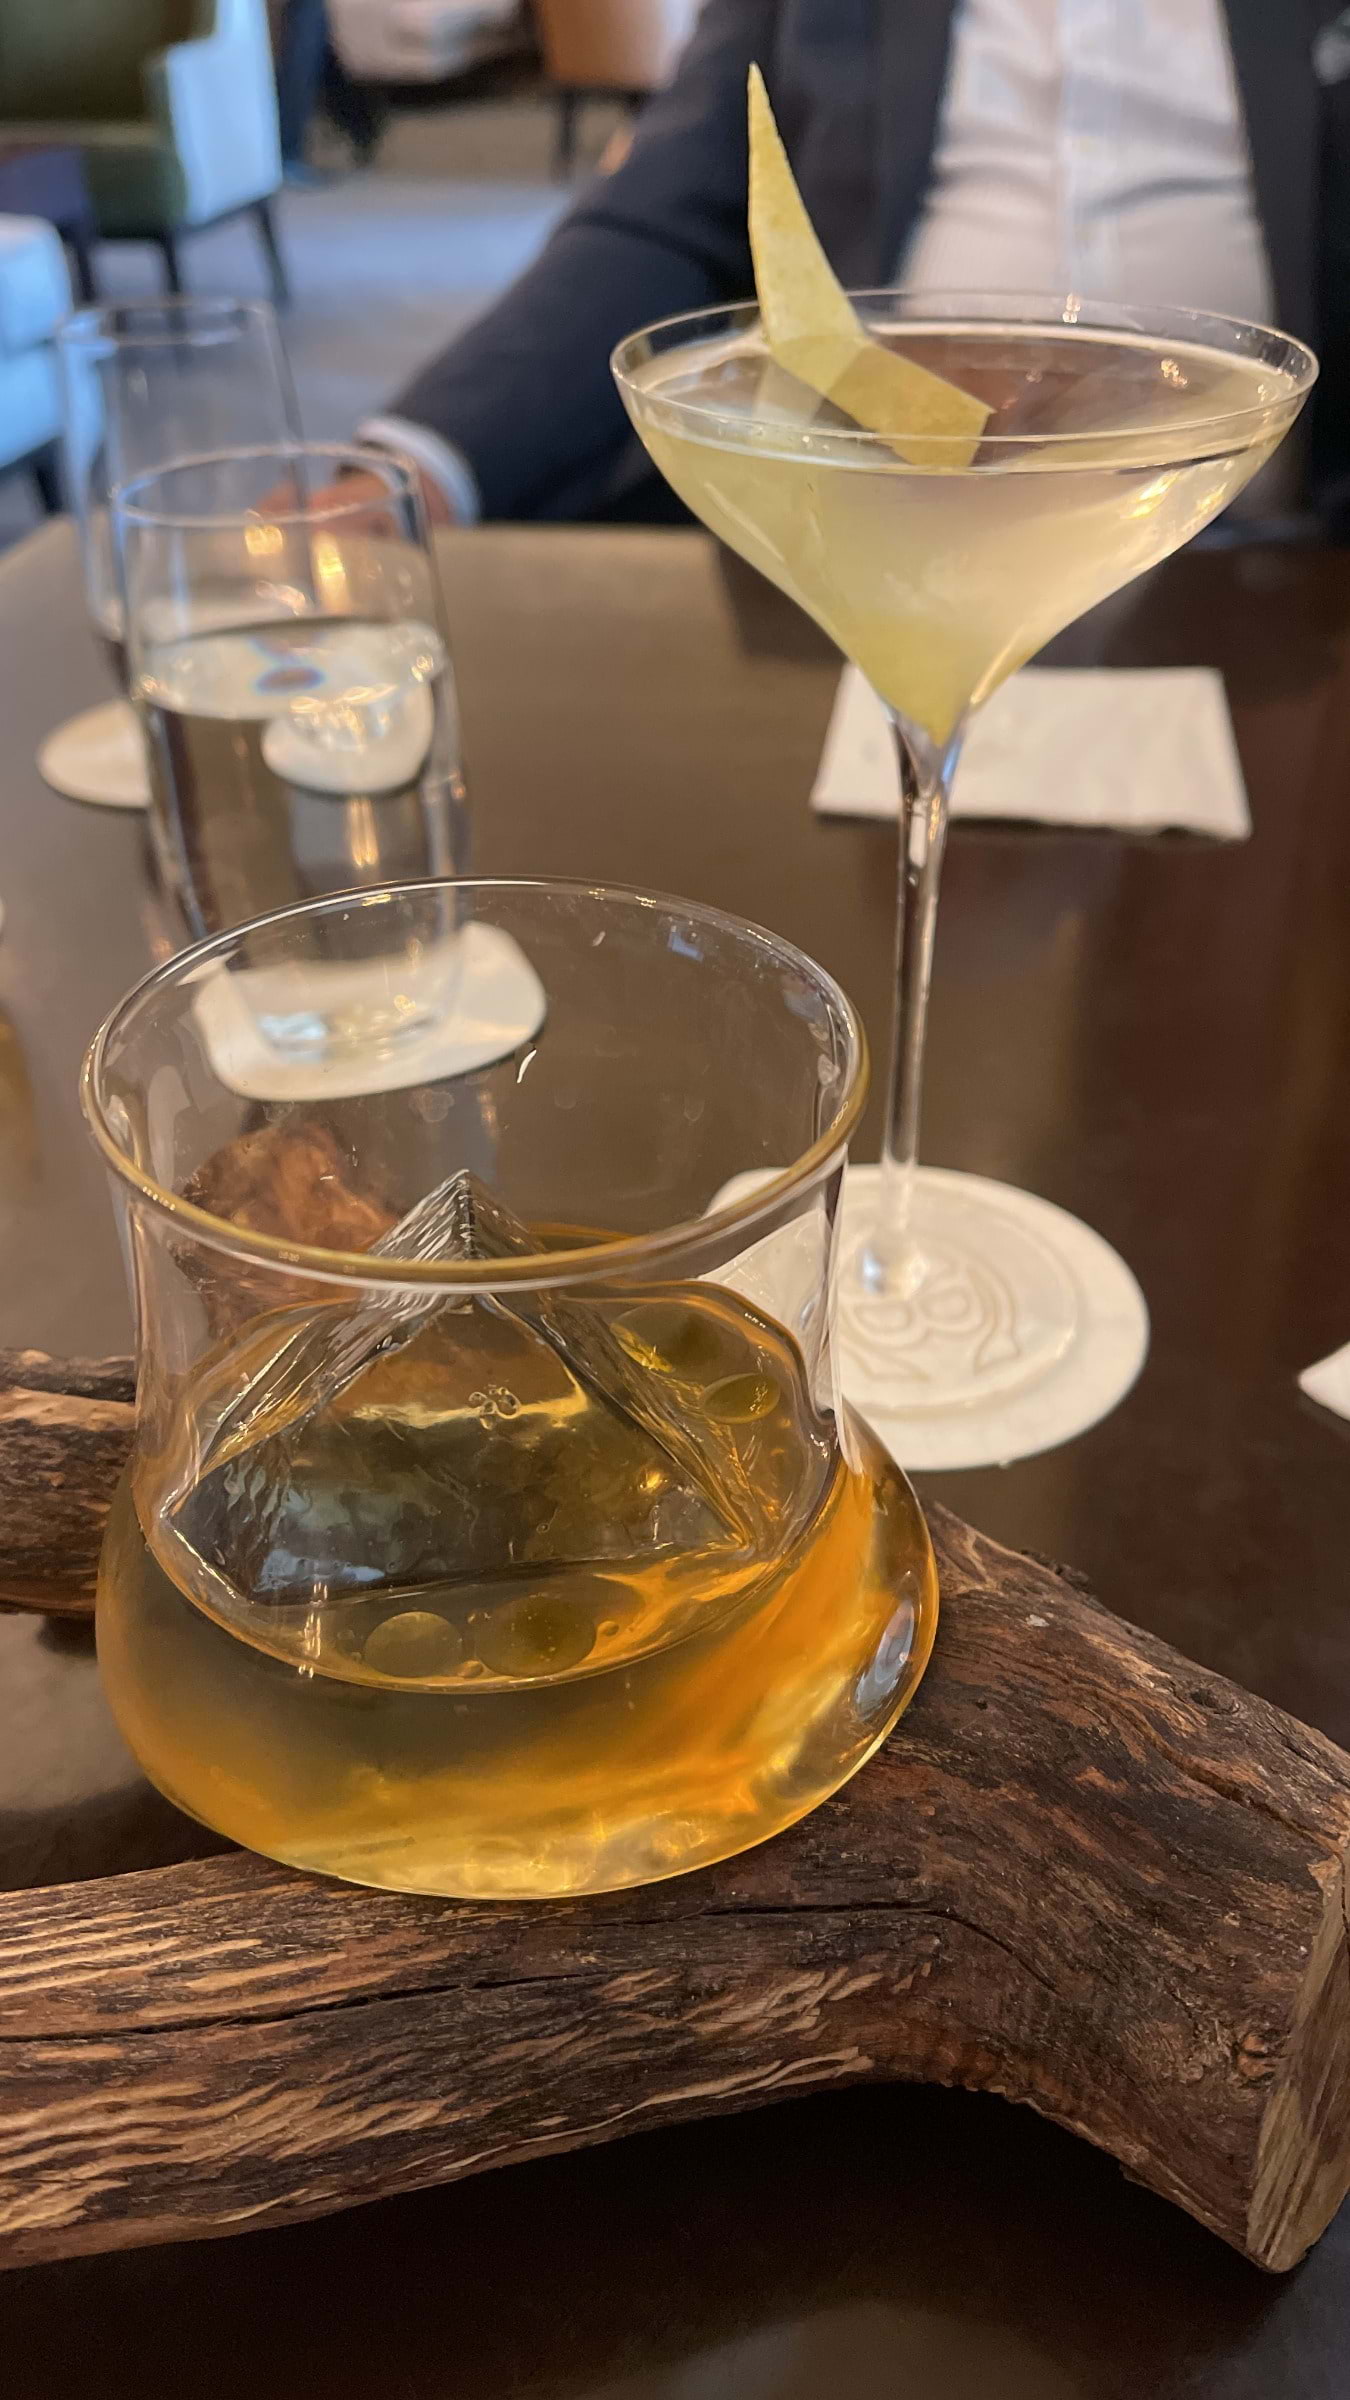 Cadierbaren Whiskypinne och Vesper Martini – Bild från Cadierbaren av Cocktailguiden S.